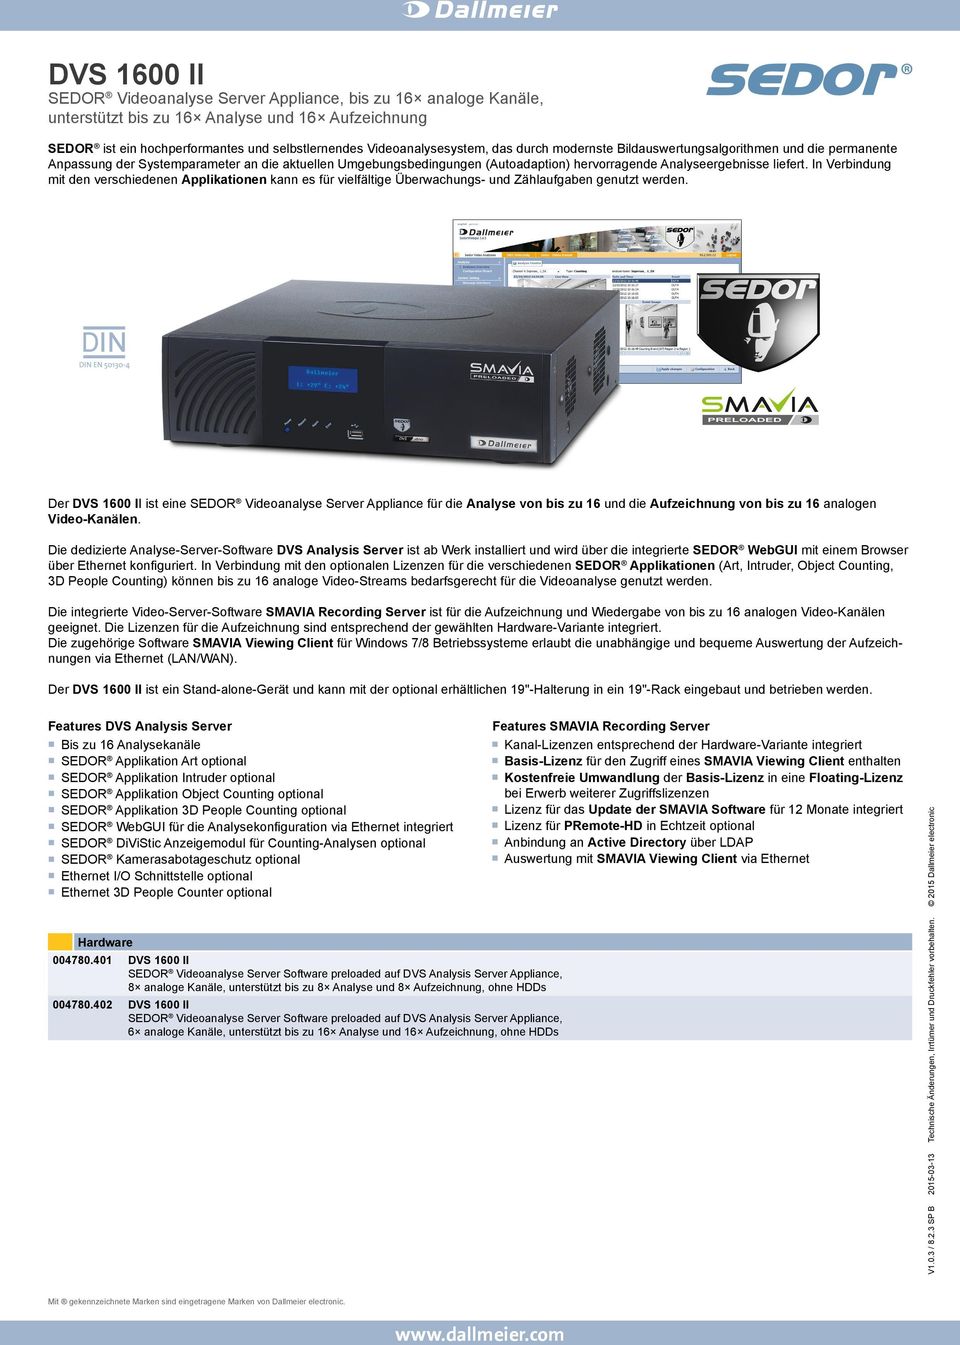 Der ist eine SEDOR Videoanalyse Server Appliance für die Analyse von bis zu 16 und die Aufzeichnung von bis zu 16 analogen Video-Kanälen.